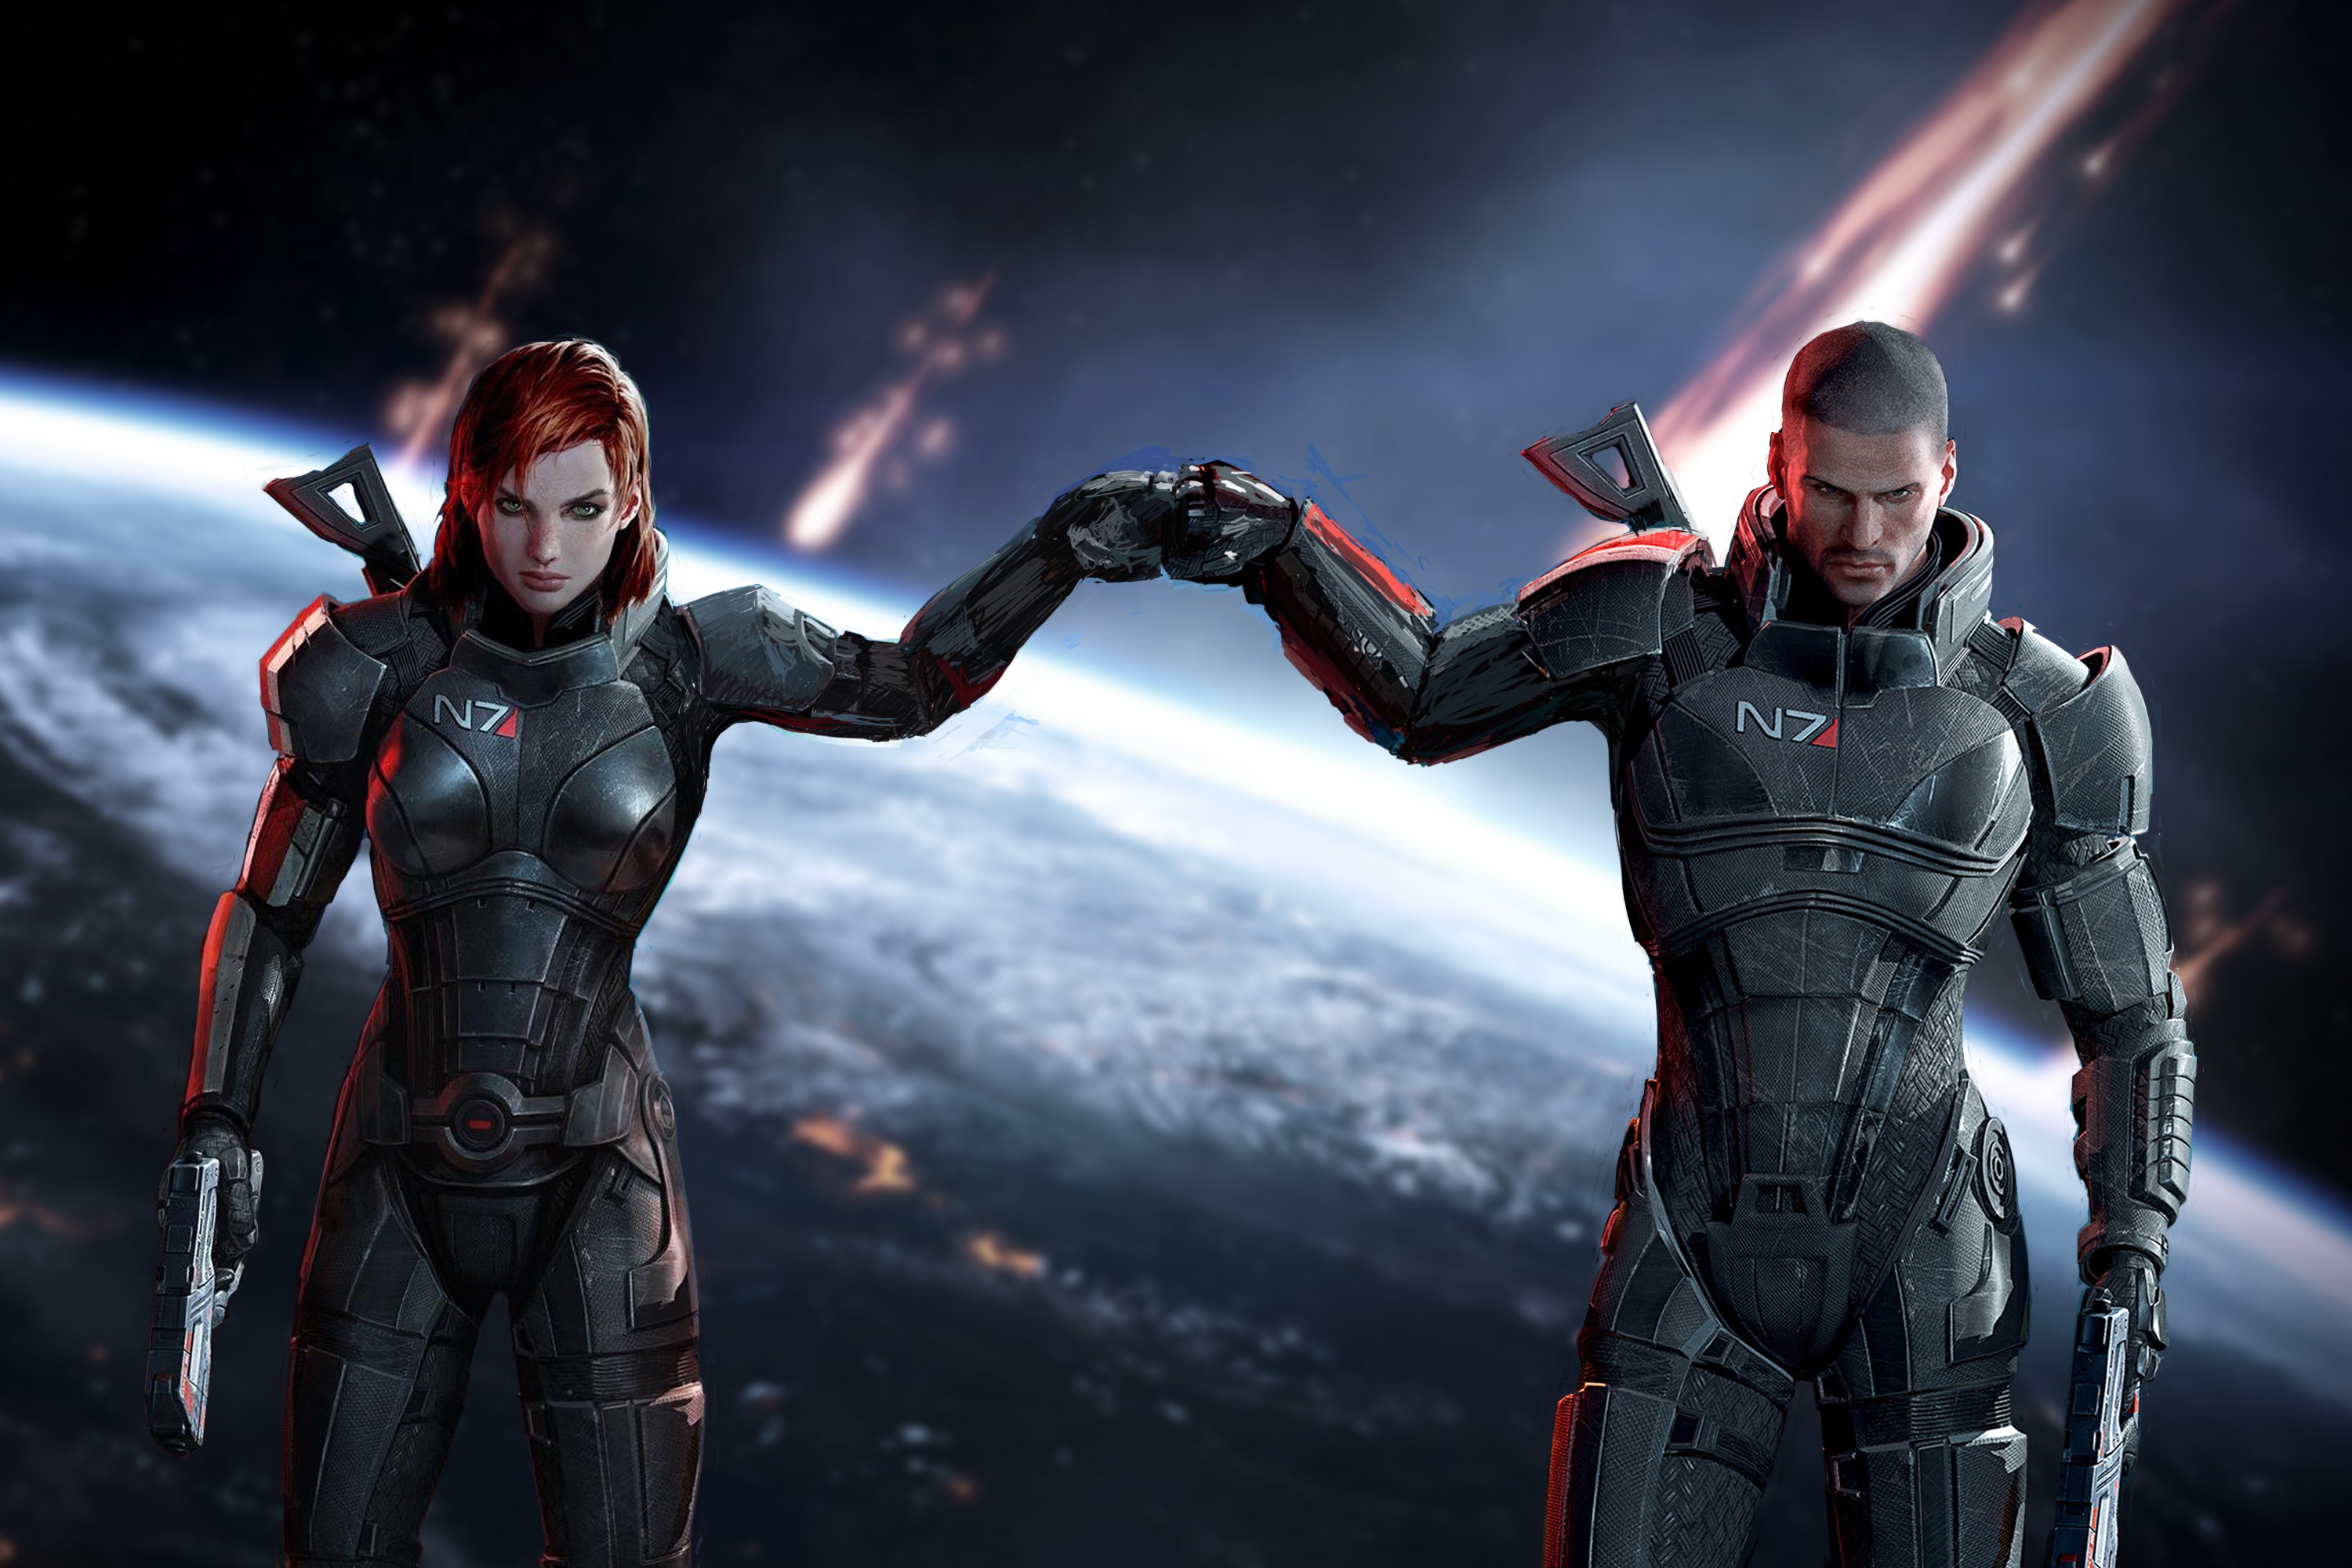 Descarga gratuita de fondo de pantalla para móvil de Mass Effect, Armadura, Videojuego, Pistola, Mass Effect 3, Comandante Shepard.